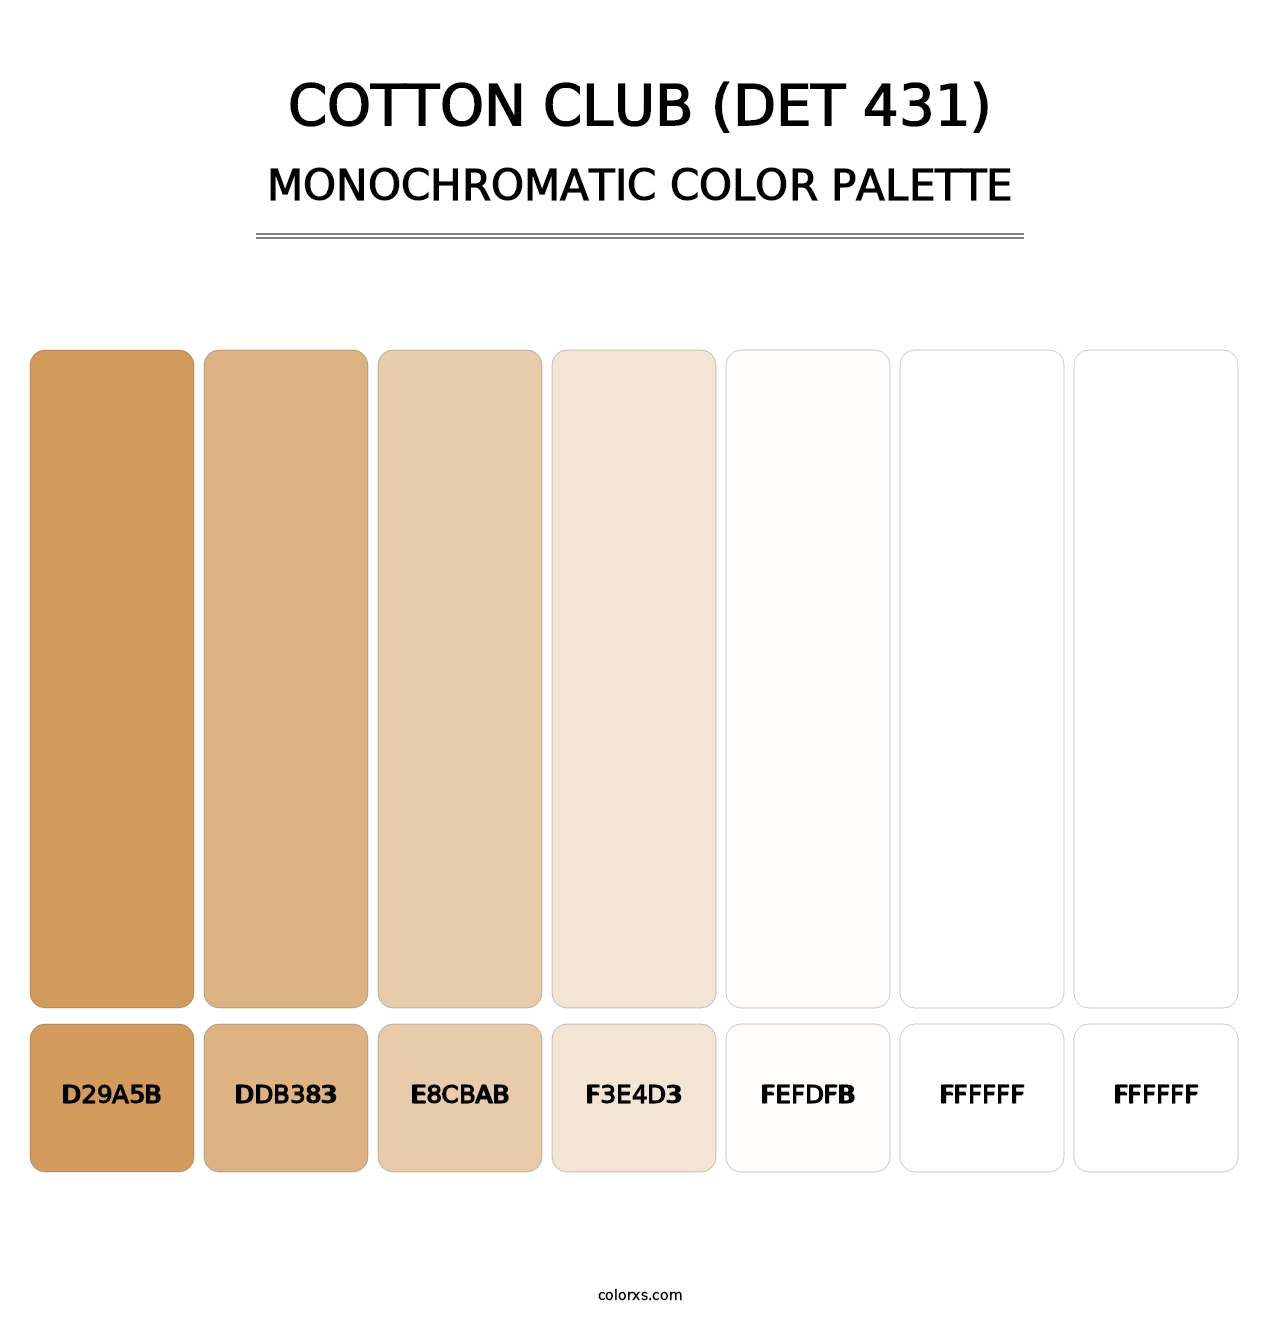 Cotton Club (DET 431) - Monochromatic Color Palette